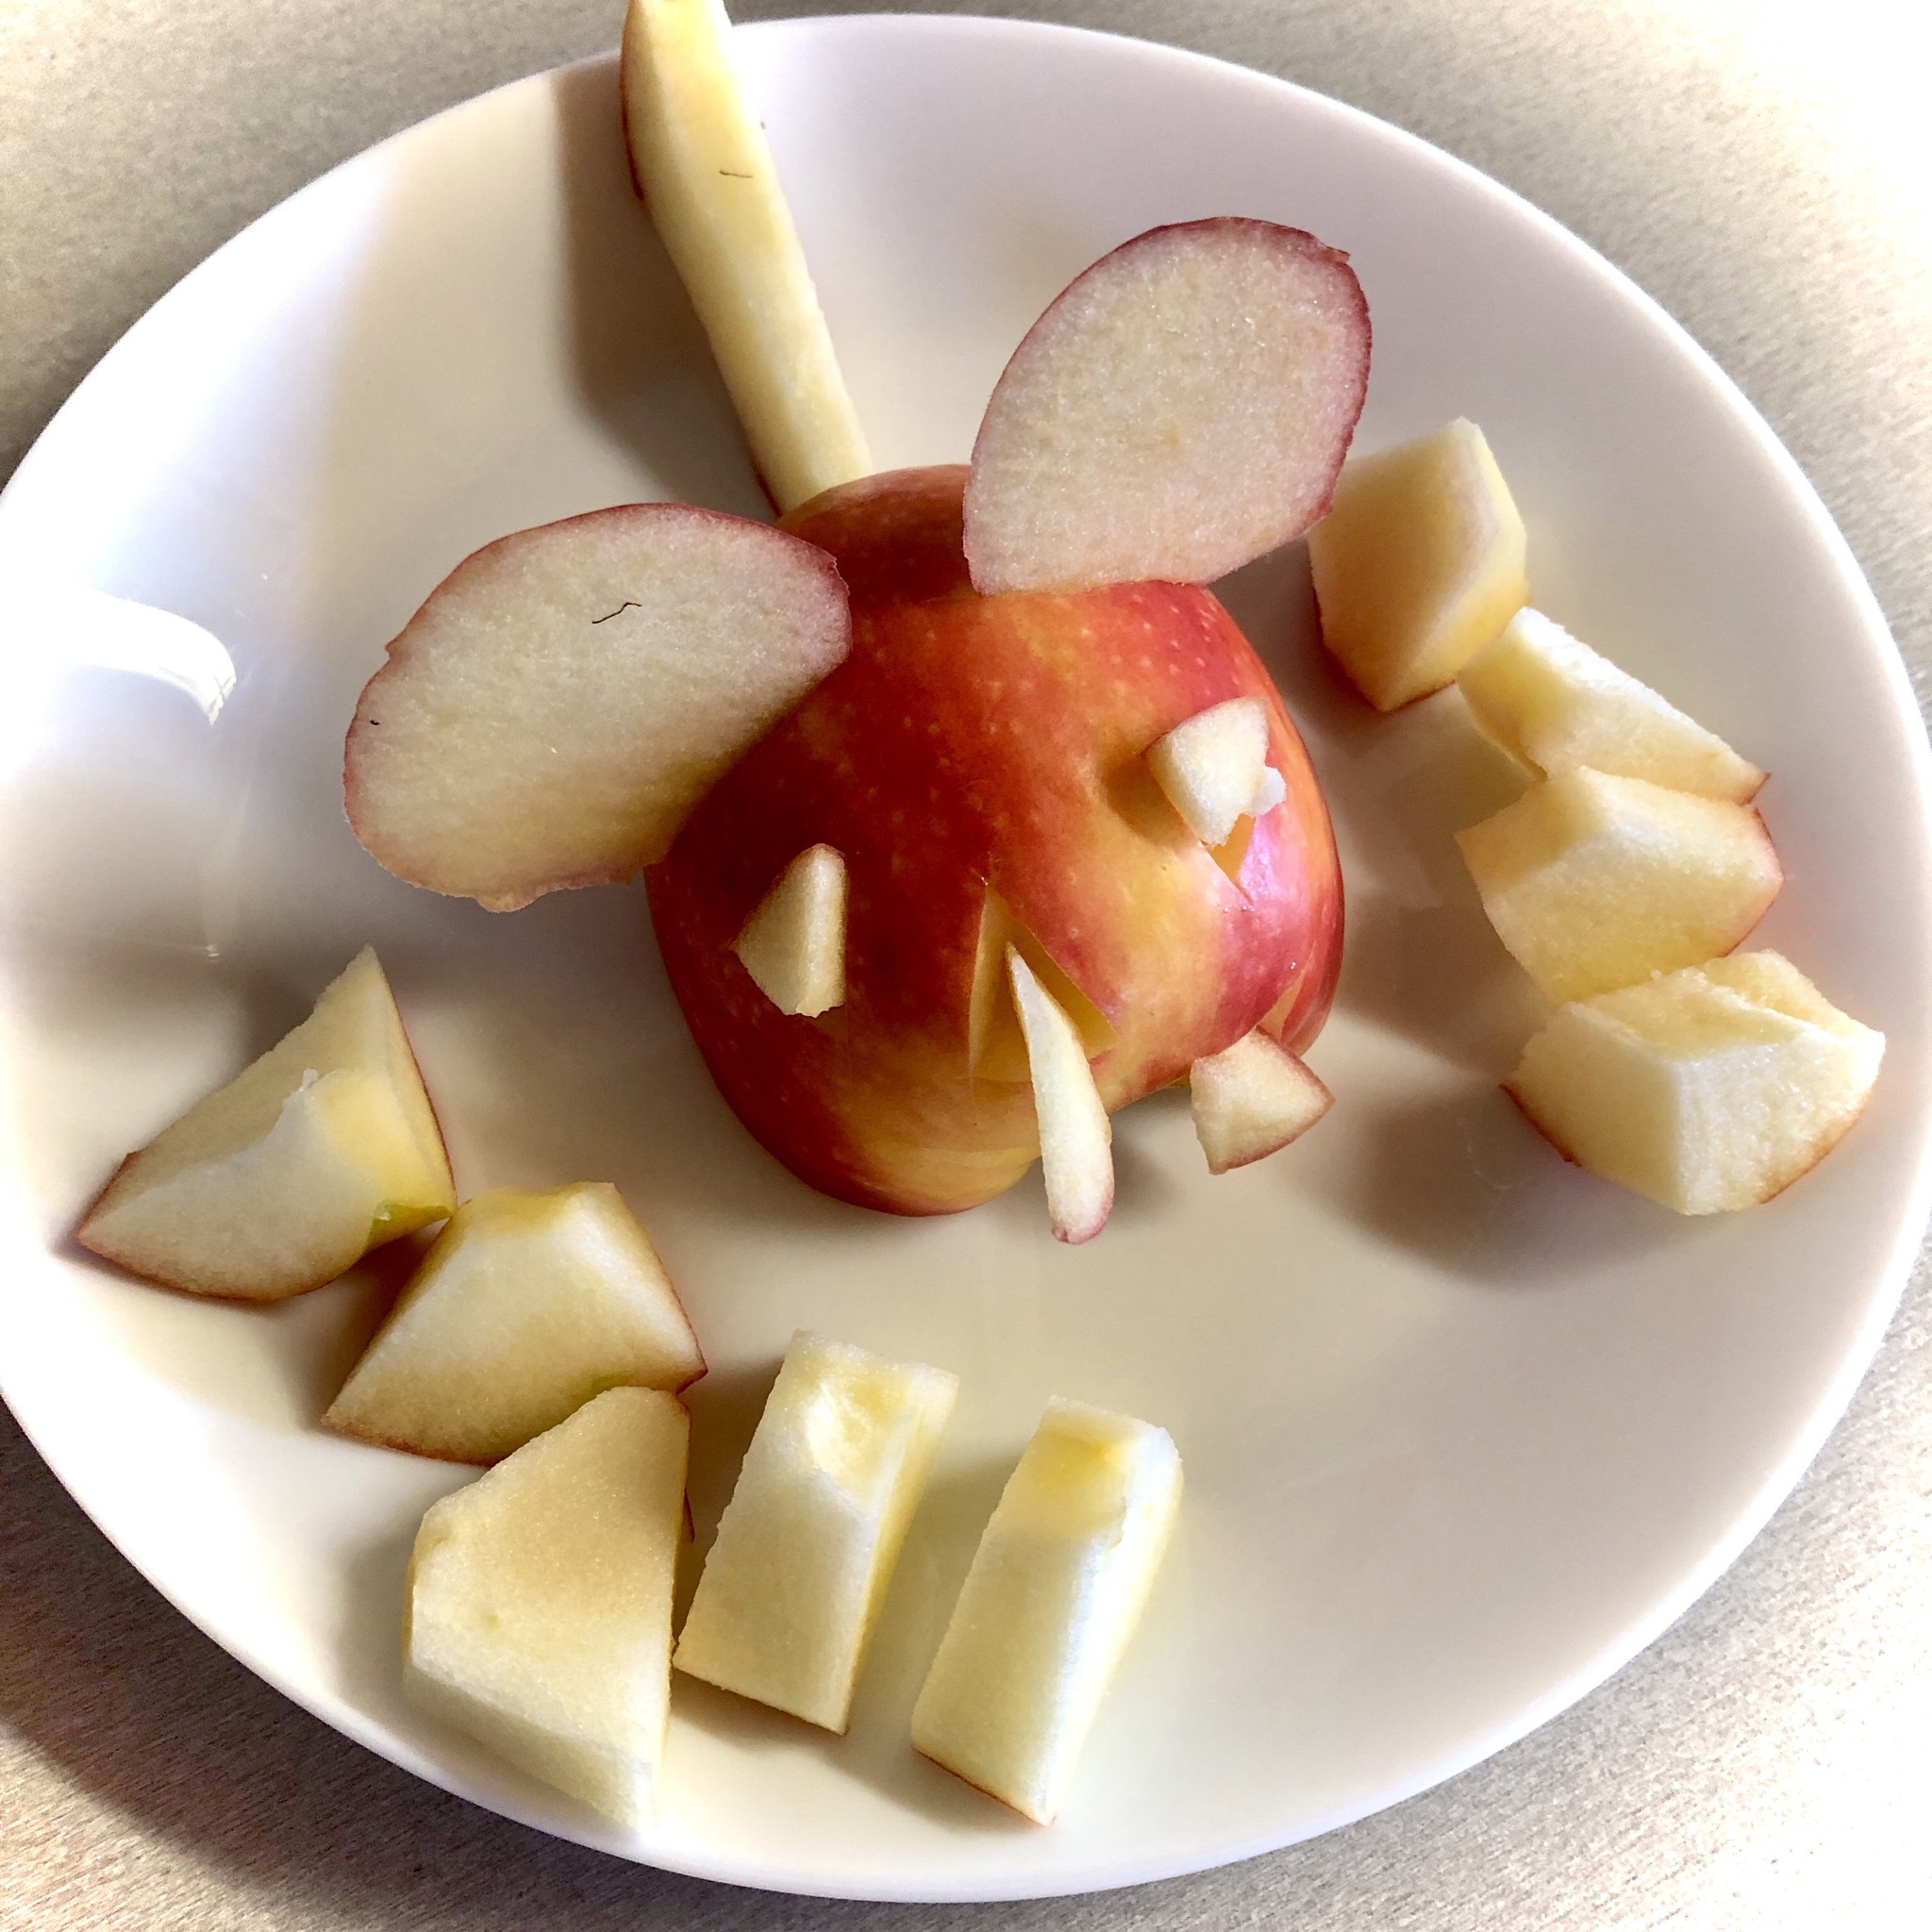 Bild zum Schritt 16 für das Bastel- und DIY-Abenteuer für Kinder: 'Aus den restlichen Apfelteilen werden kleine Stücke geschnitten und um...'